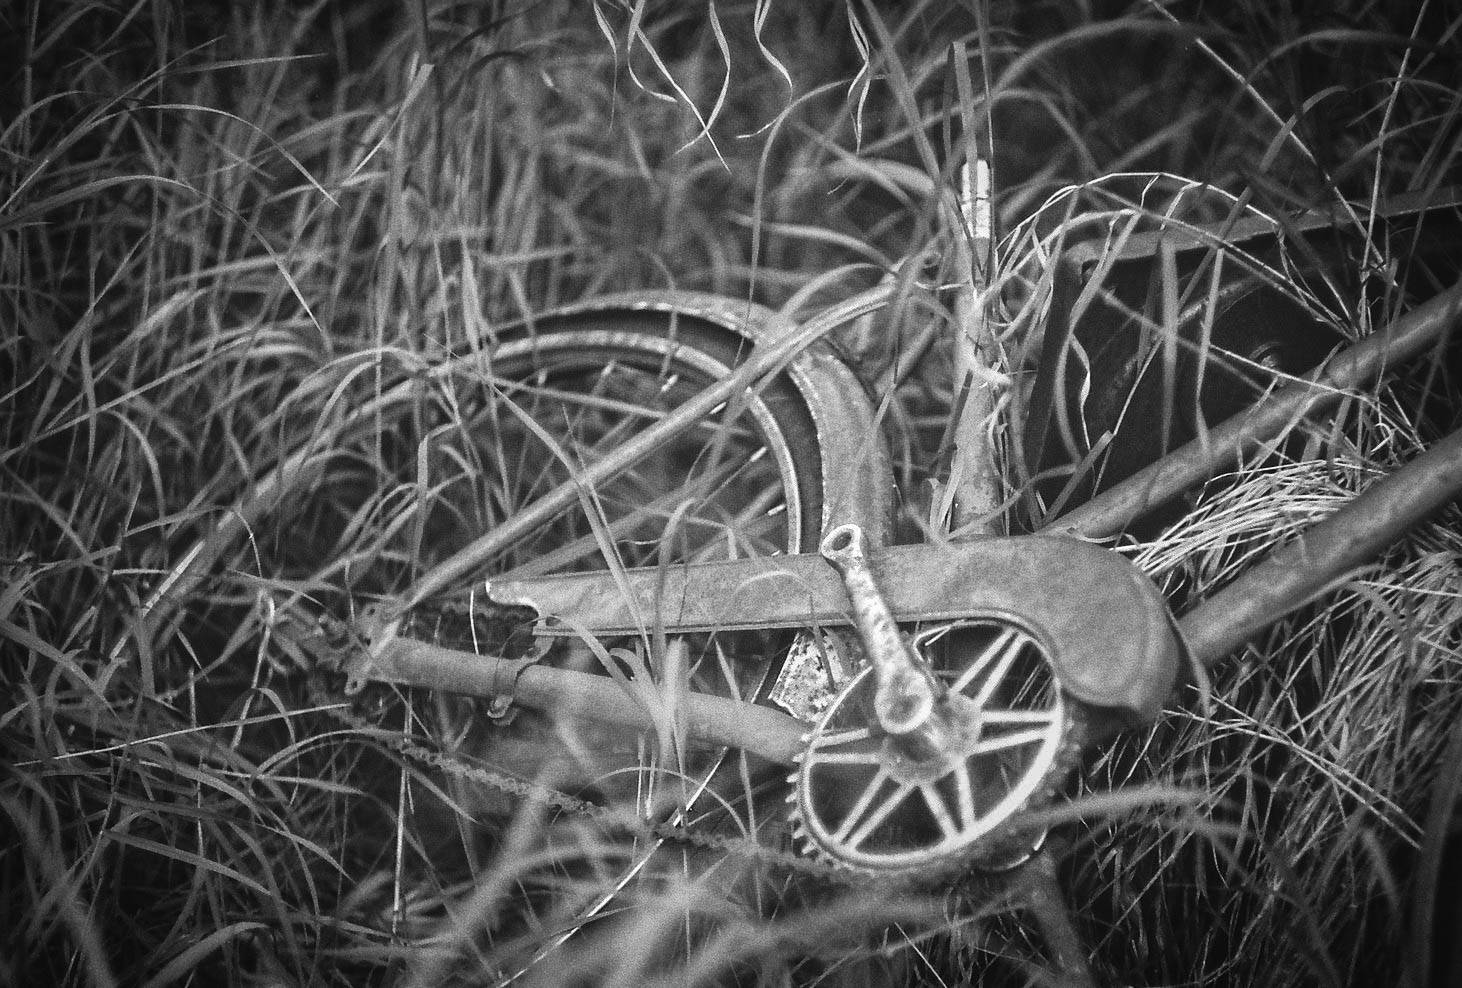  Bicycle in grass Bulwark, Alberta Leica M3, Canon 50mm F1.4 Ilford Pan F Plus 50 film 7/16 